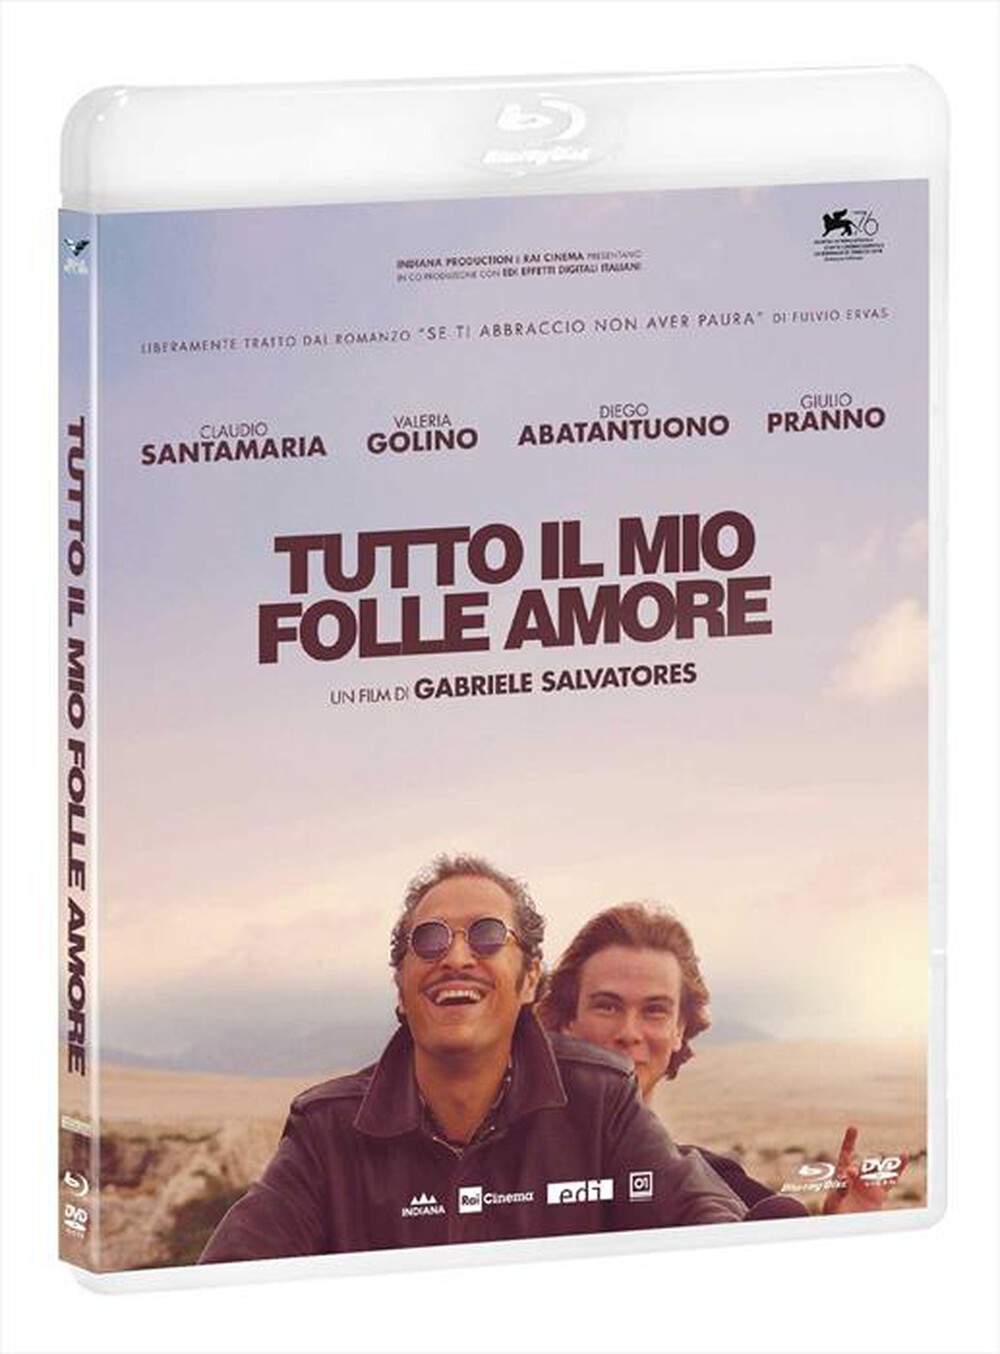 "EAGLE PICTURES - Tutto Il Mio Folle Amore (Blu-Ray+Dvd) - "